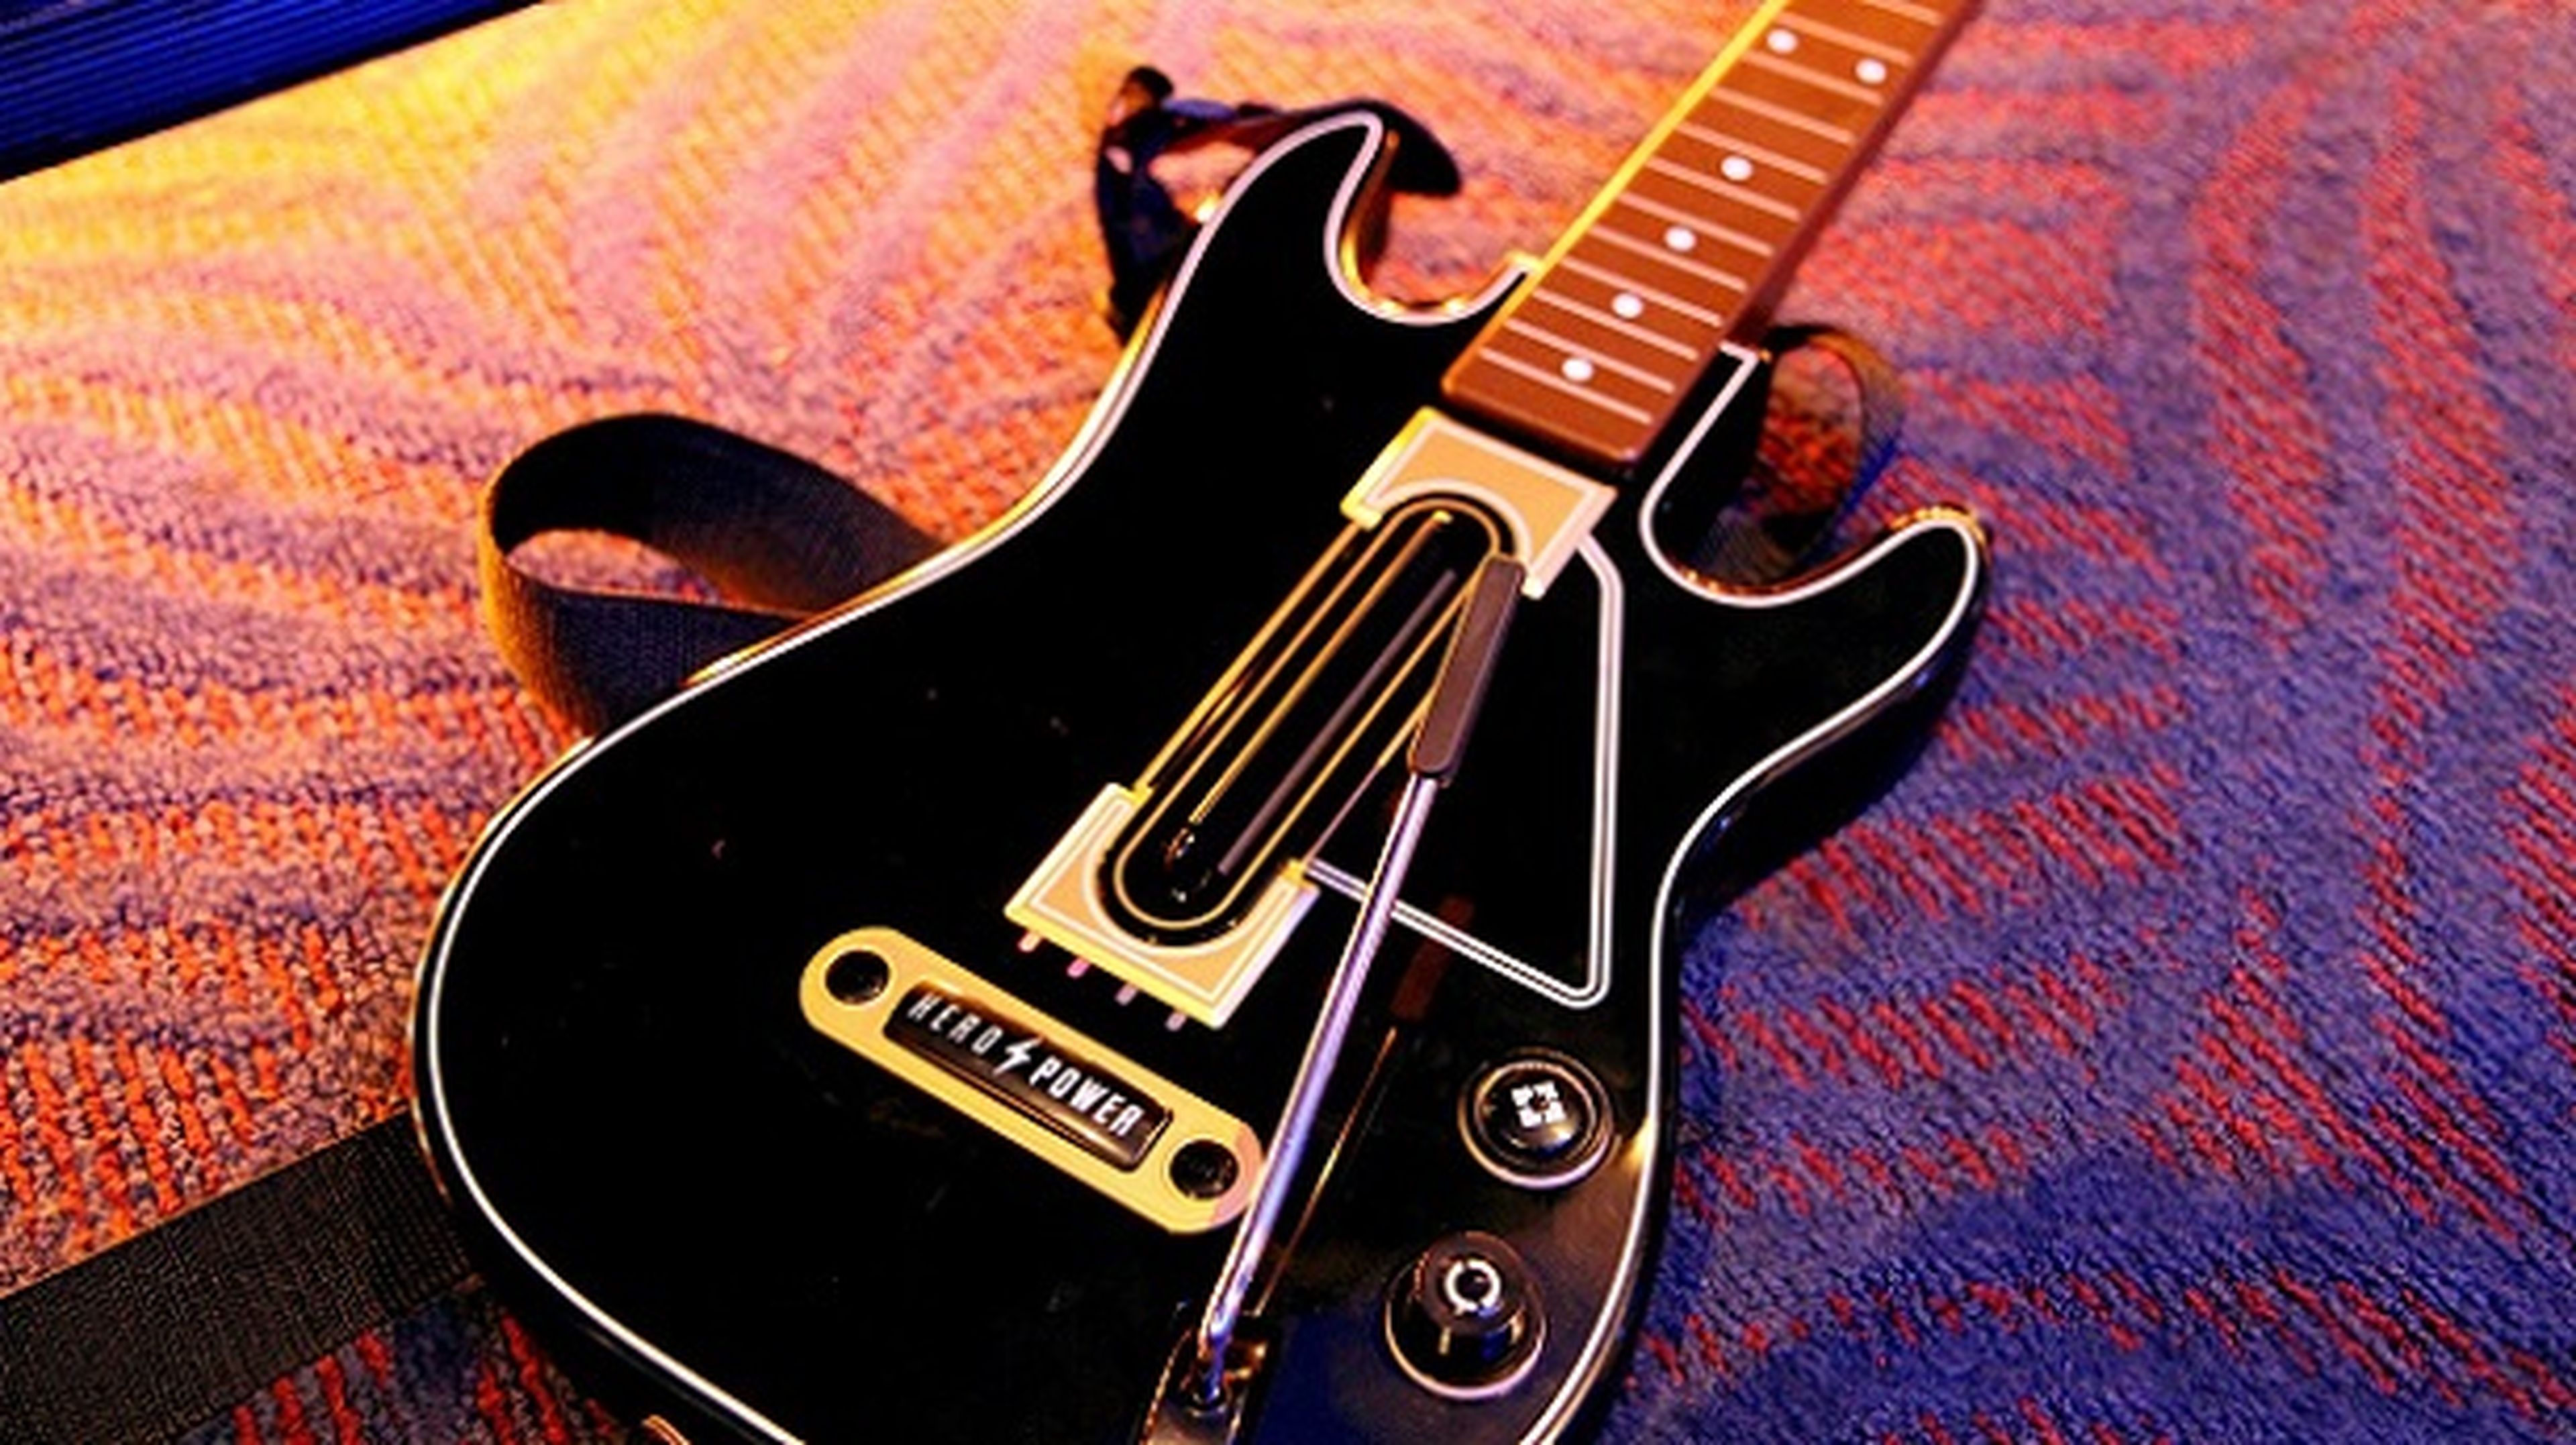 Guitar Hero no lanzará una nueva entrega en 2016